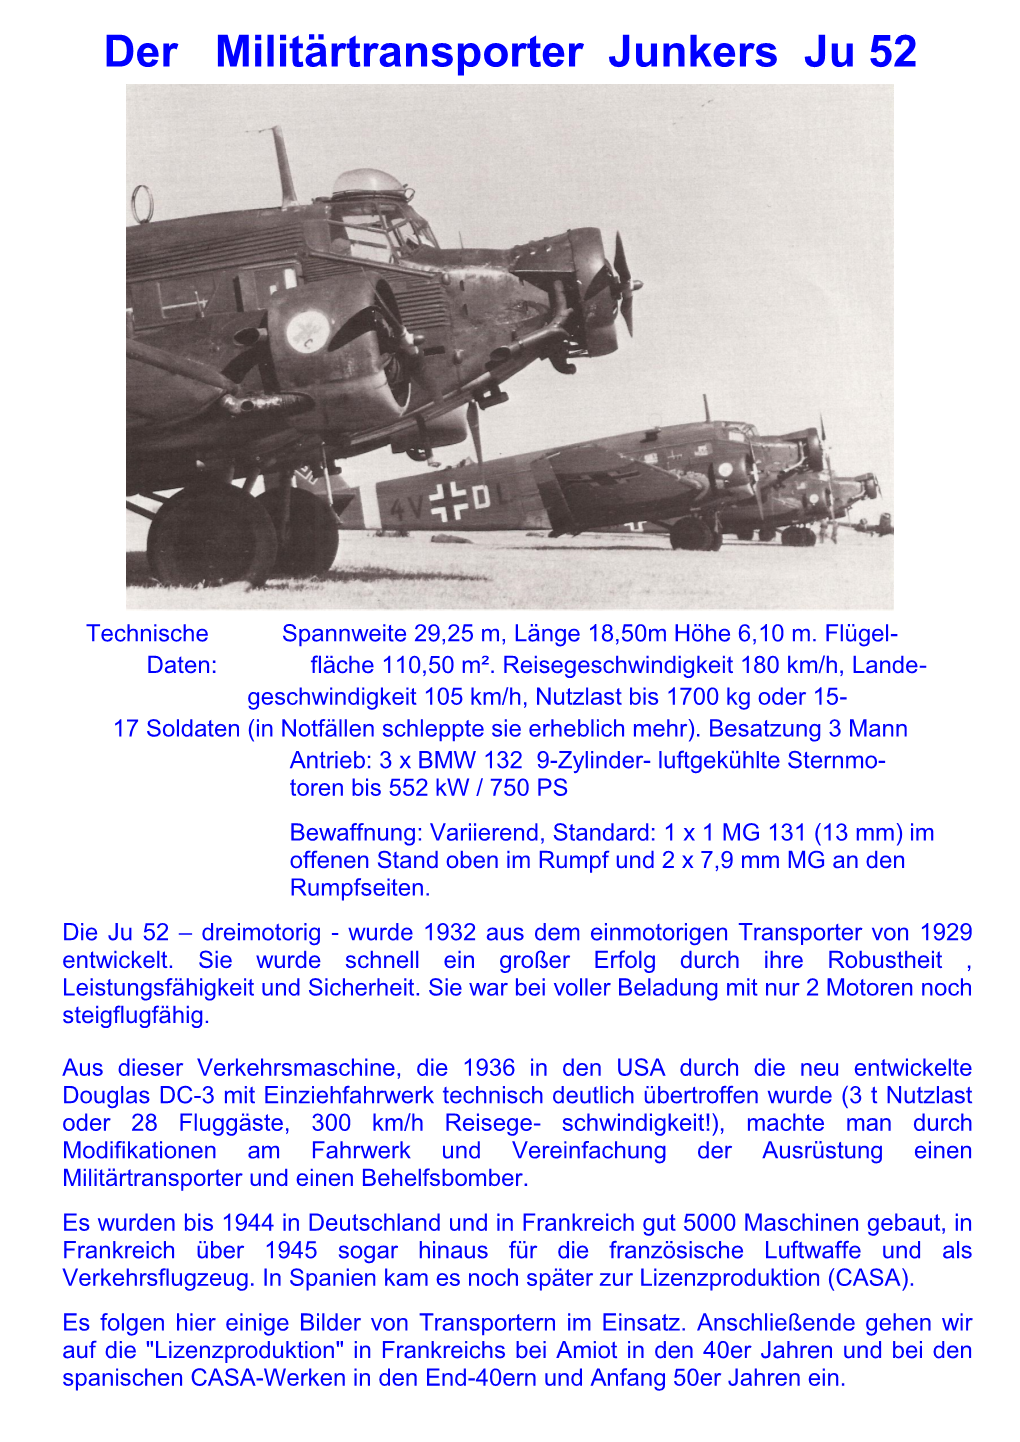 Der Militärtransporter Junkers Ju 52